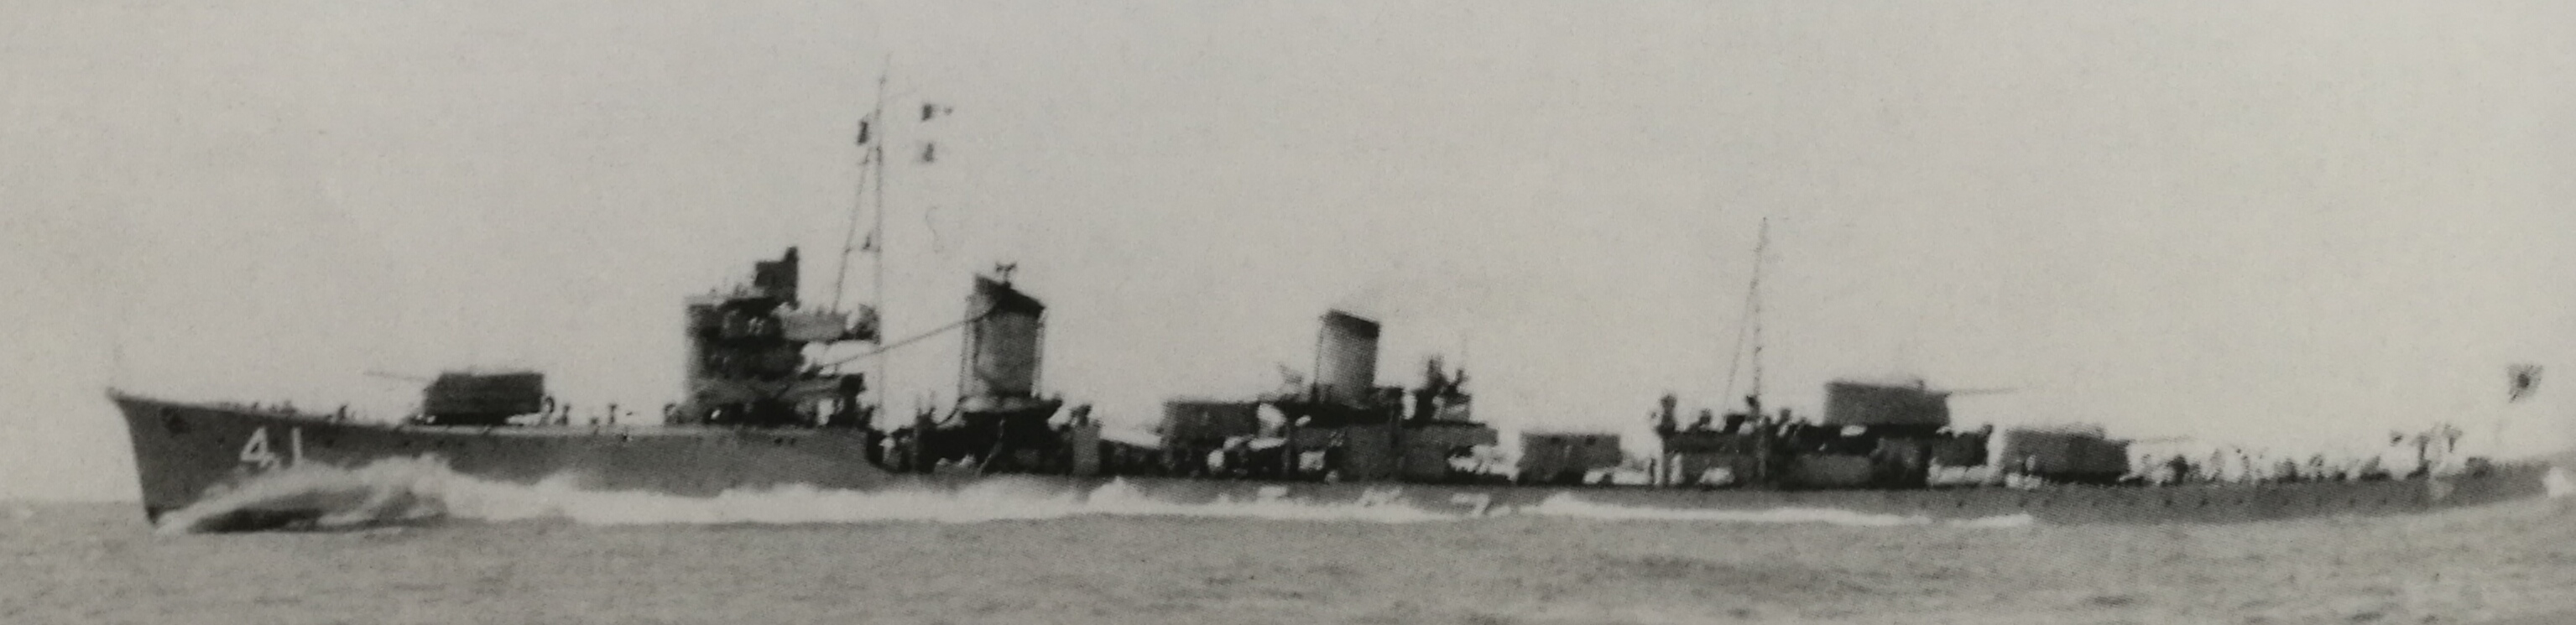 完成性能改進後於1939年9月15日在館山海域試航的山雲